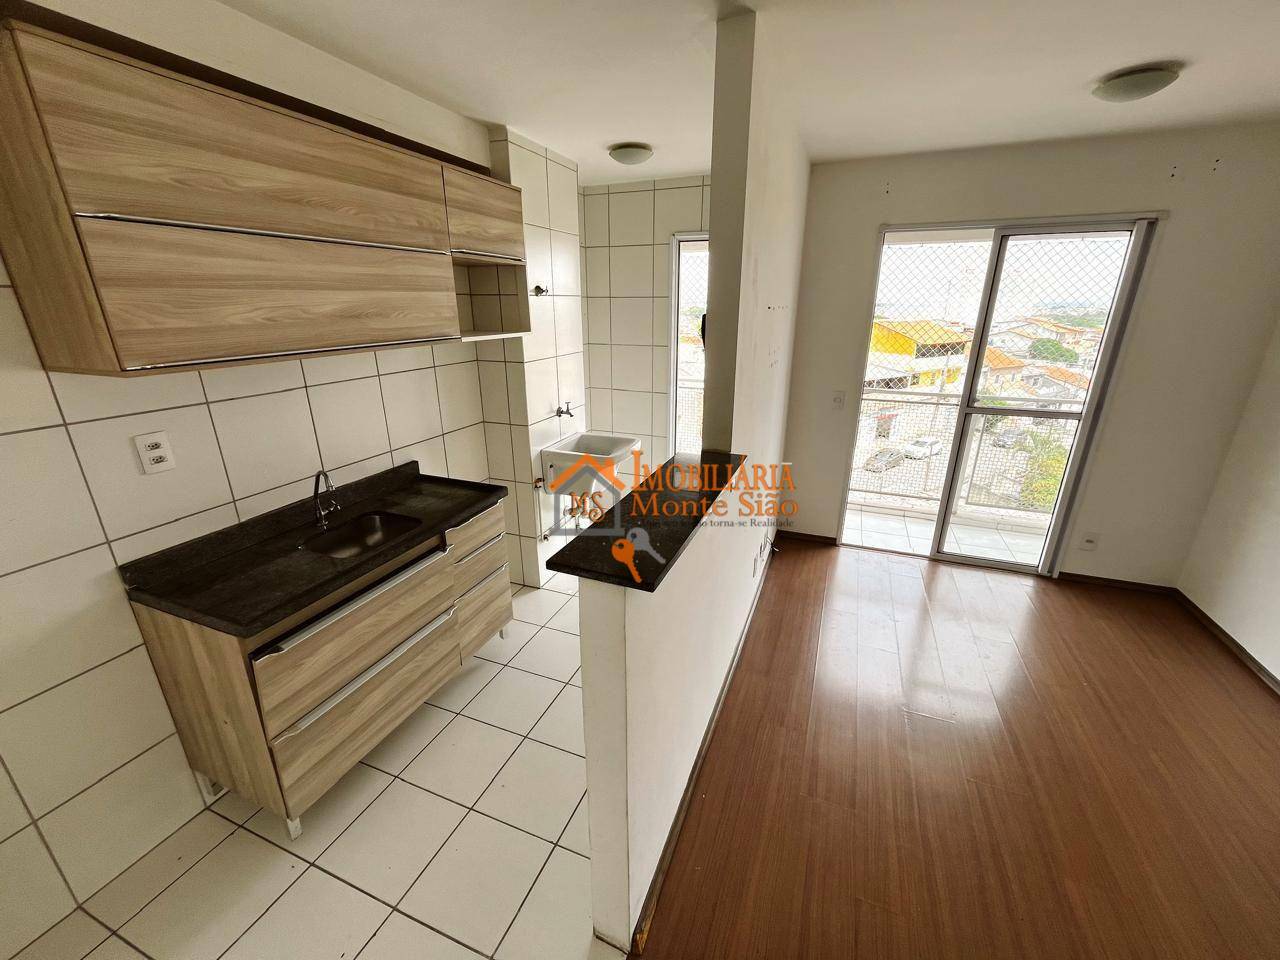 Apartamento com 2 dormitórios à venda, 52 m² por R$ 270.000,00 - Vila Bremen - Guarulhos/SP